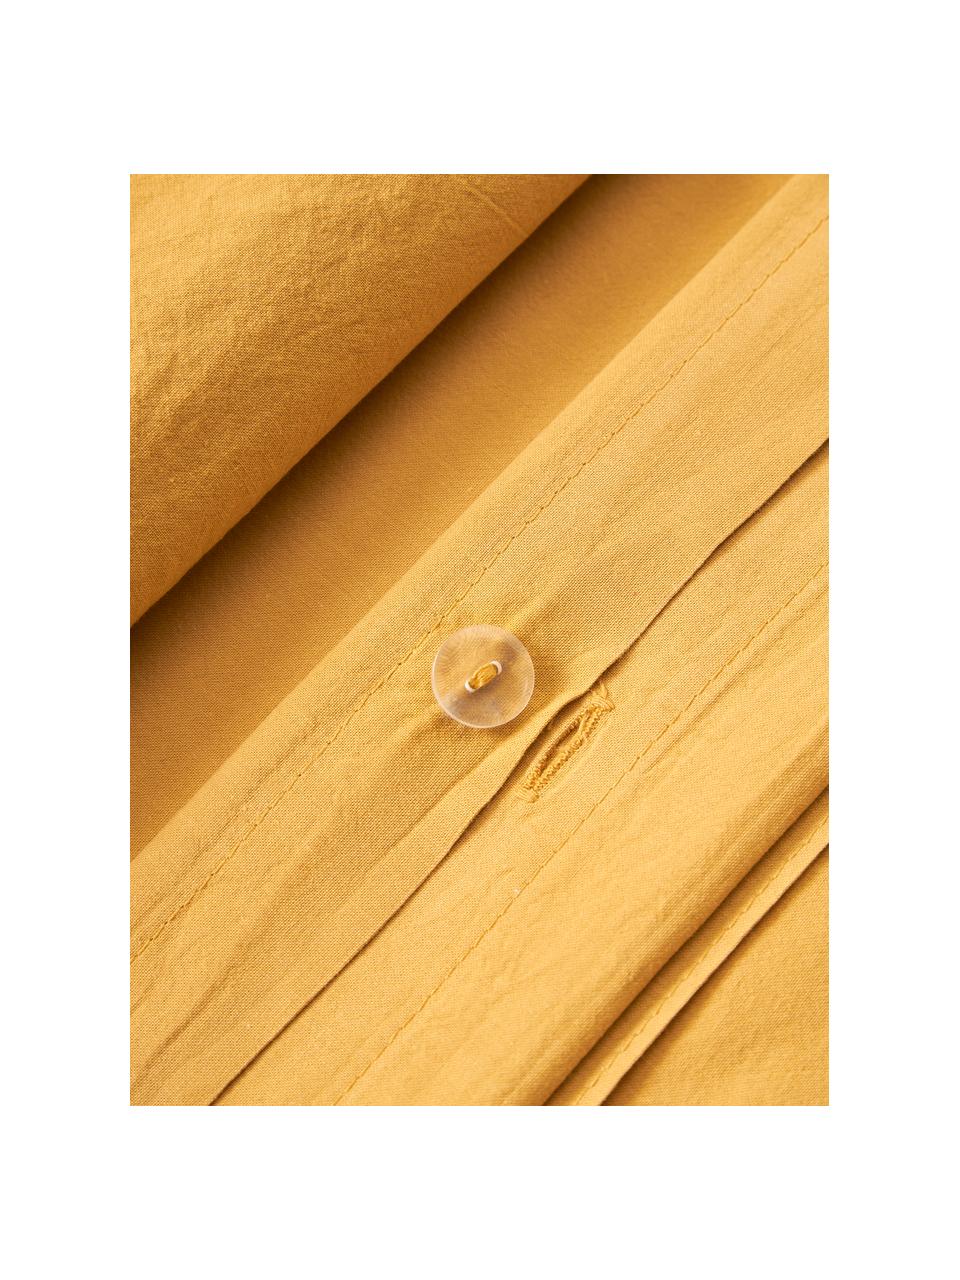 Gewaschener Baumwoll-Bettdeckenbezug Darlyn, 100 % Baumwolle
Fadendichte 150 TC, Standard Qualität

Bettwäsche aus Baumwolle fühlt sich auf der Haut angenehm weich an, nimmt Feuchtigkeit gut auf und eignet sich für Allergiker.

Durch ein besonderes Waschungsverfahren erhält der Stoff eine robuste, unregelmäßige Stonewash-Optik. Außerdem wird der Stoff dadurch weich und geschmeidig im Griff und erhält eine natürliche Knitter-Optik, die kein Bügeln erfordert und Gemütlichkeit ausstrahlt.

Das in diesem Produkt verwendete Material ist schadstoffgeprüft und zertifiziert nach STANDARD 100 by OEKO-TEX®, 4265CIT, CITEVE., Senfgelb, B 200 x L 200 cm